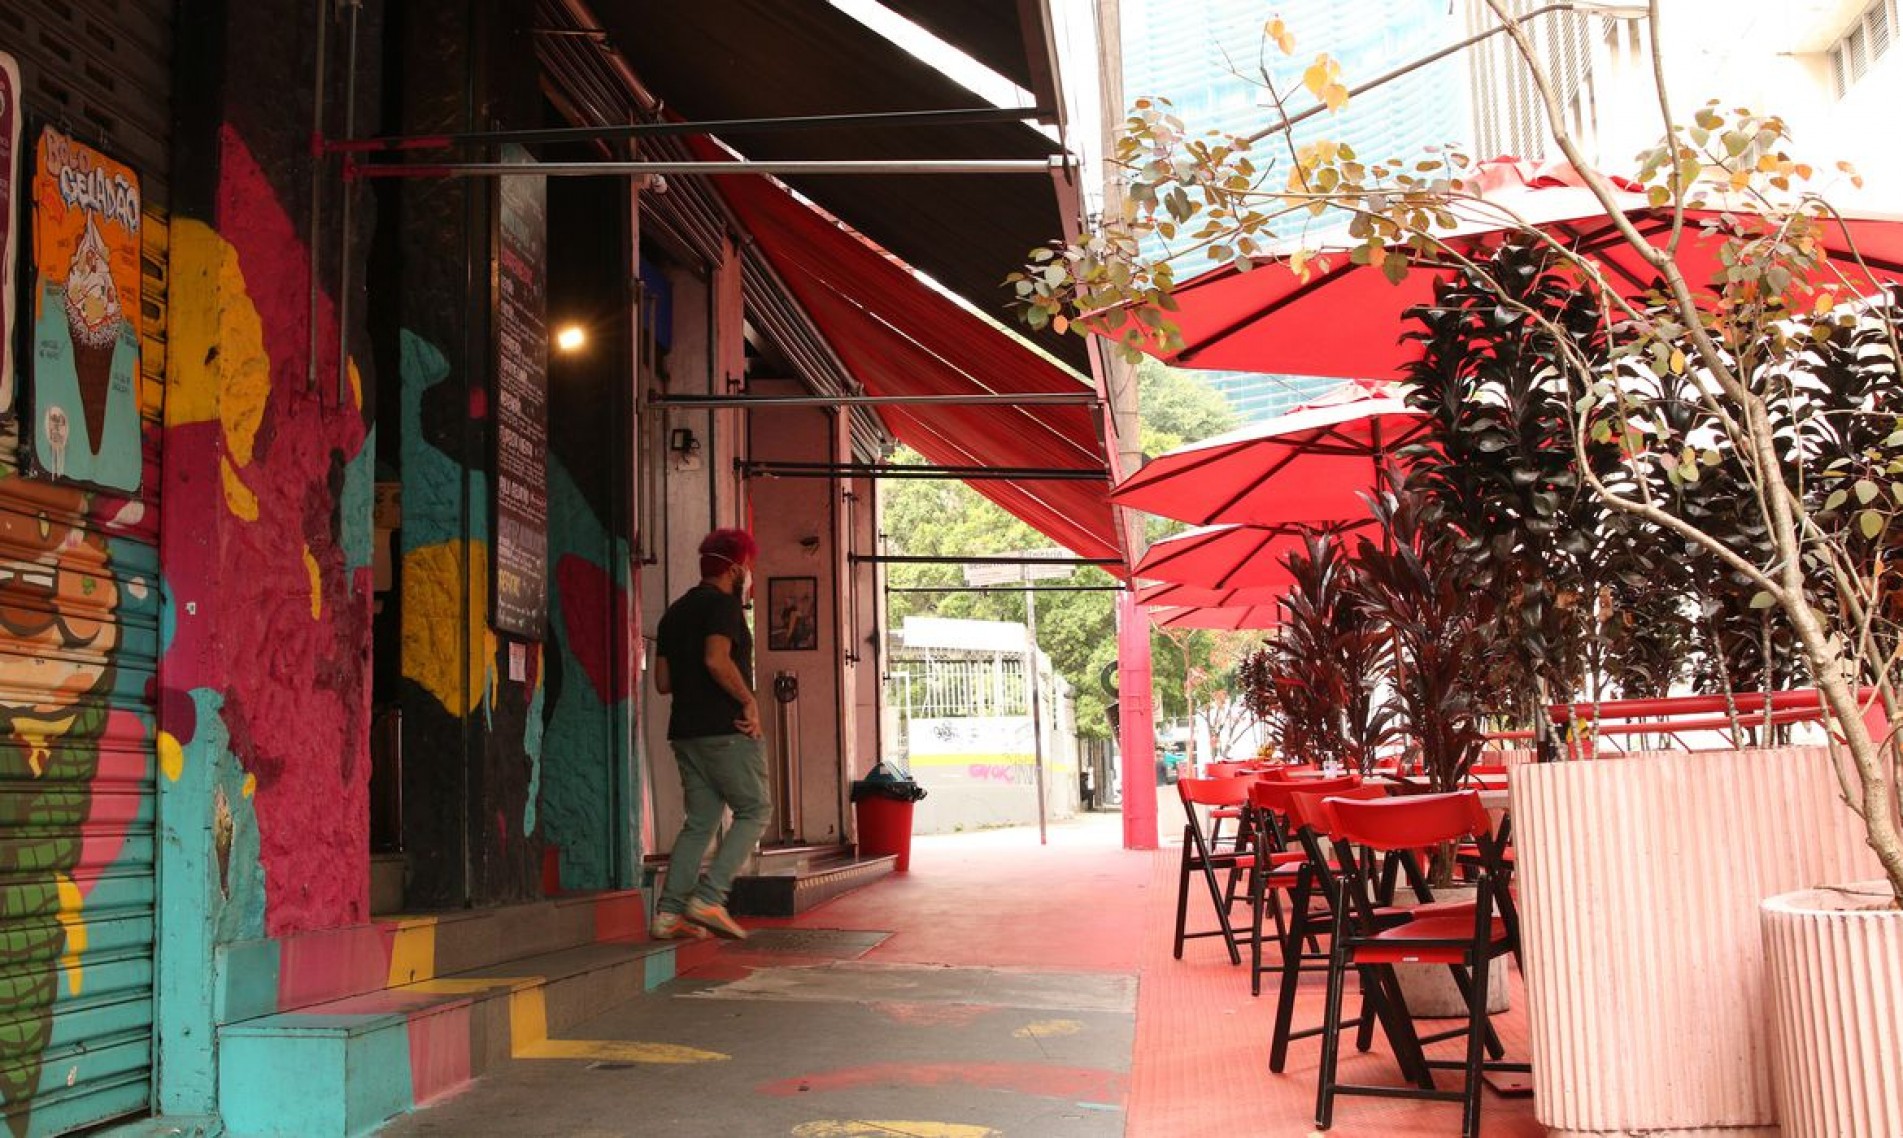 São Paulo - O projeto Ruas SP, da prefeitura de São Paulo, autoriza que bares e restaurantes ocupem com mesas e cadeiras a faixa de rua destinada ao estacionamento de veículos para atendimento público ao ar livre. 